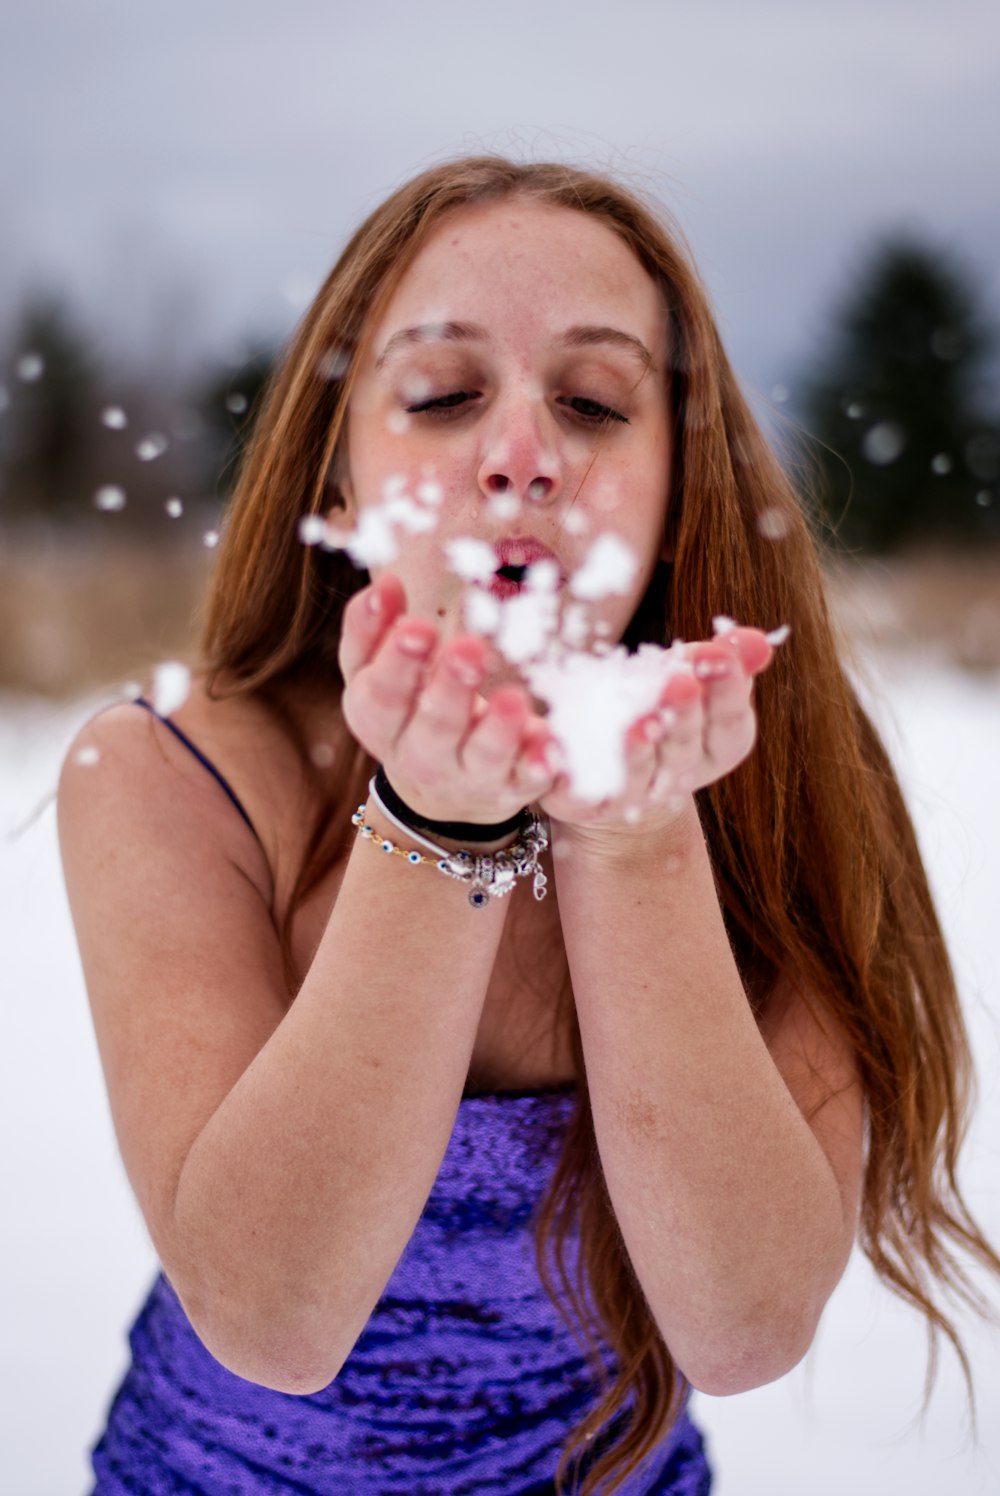 Une femme soufflant de la neige sur ses mains dans la neige